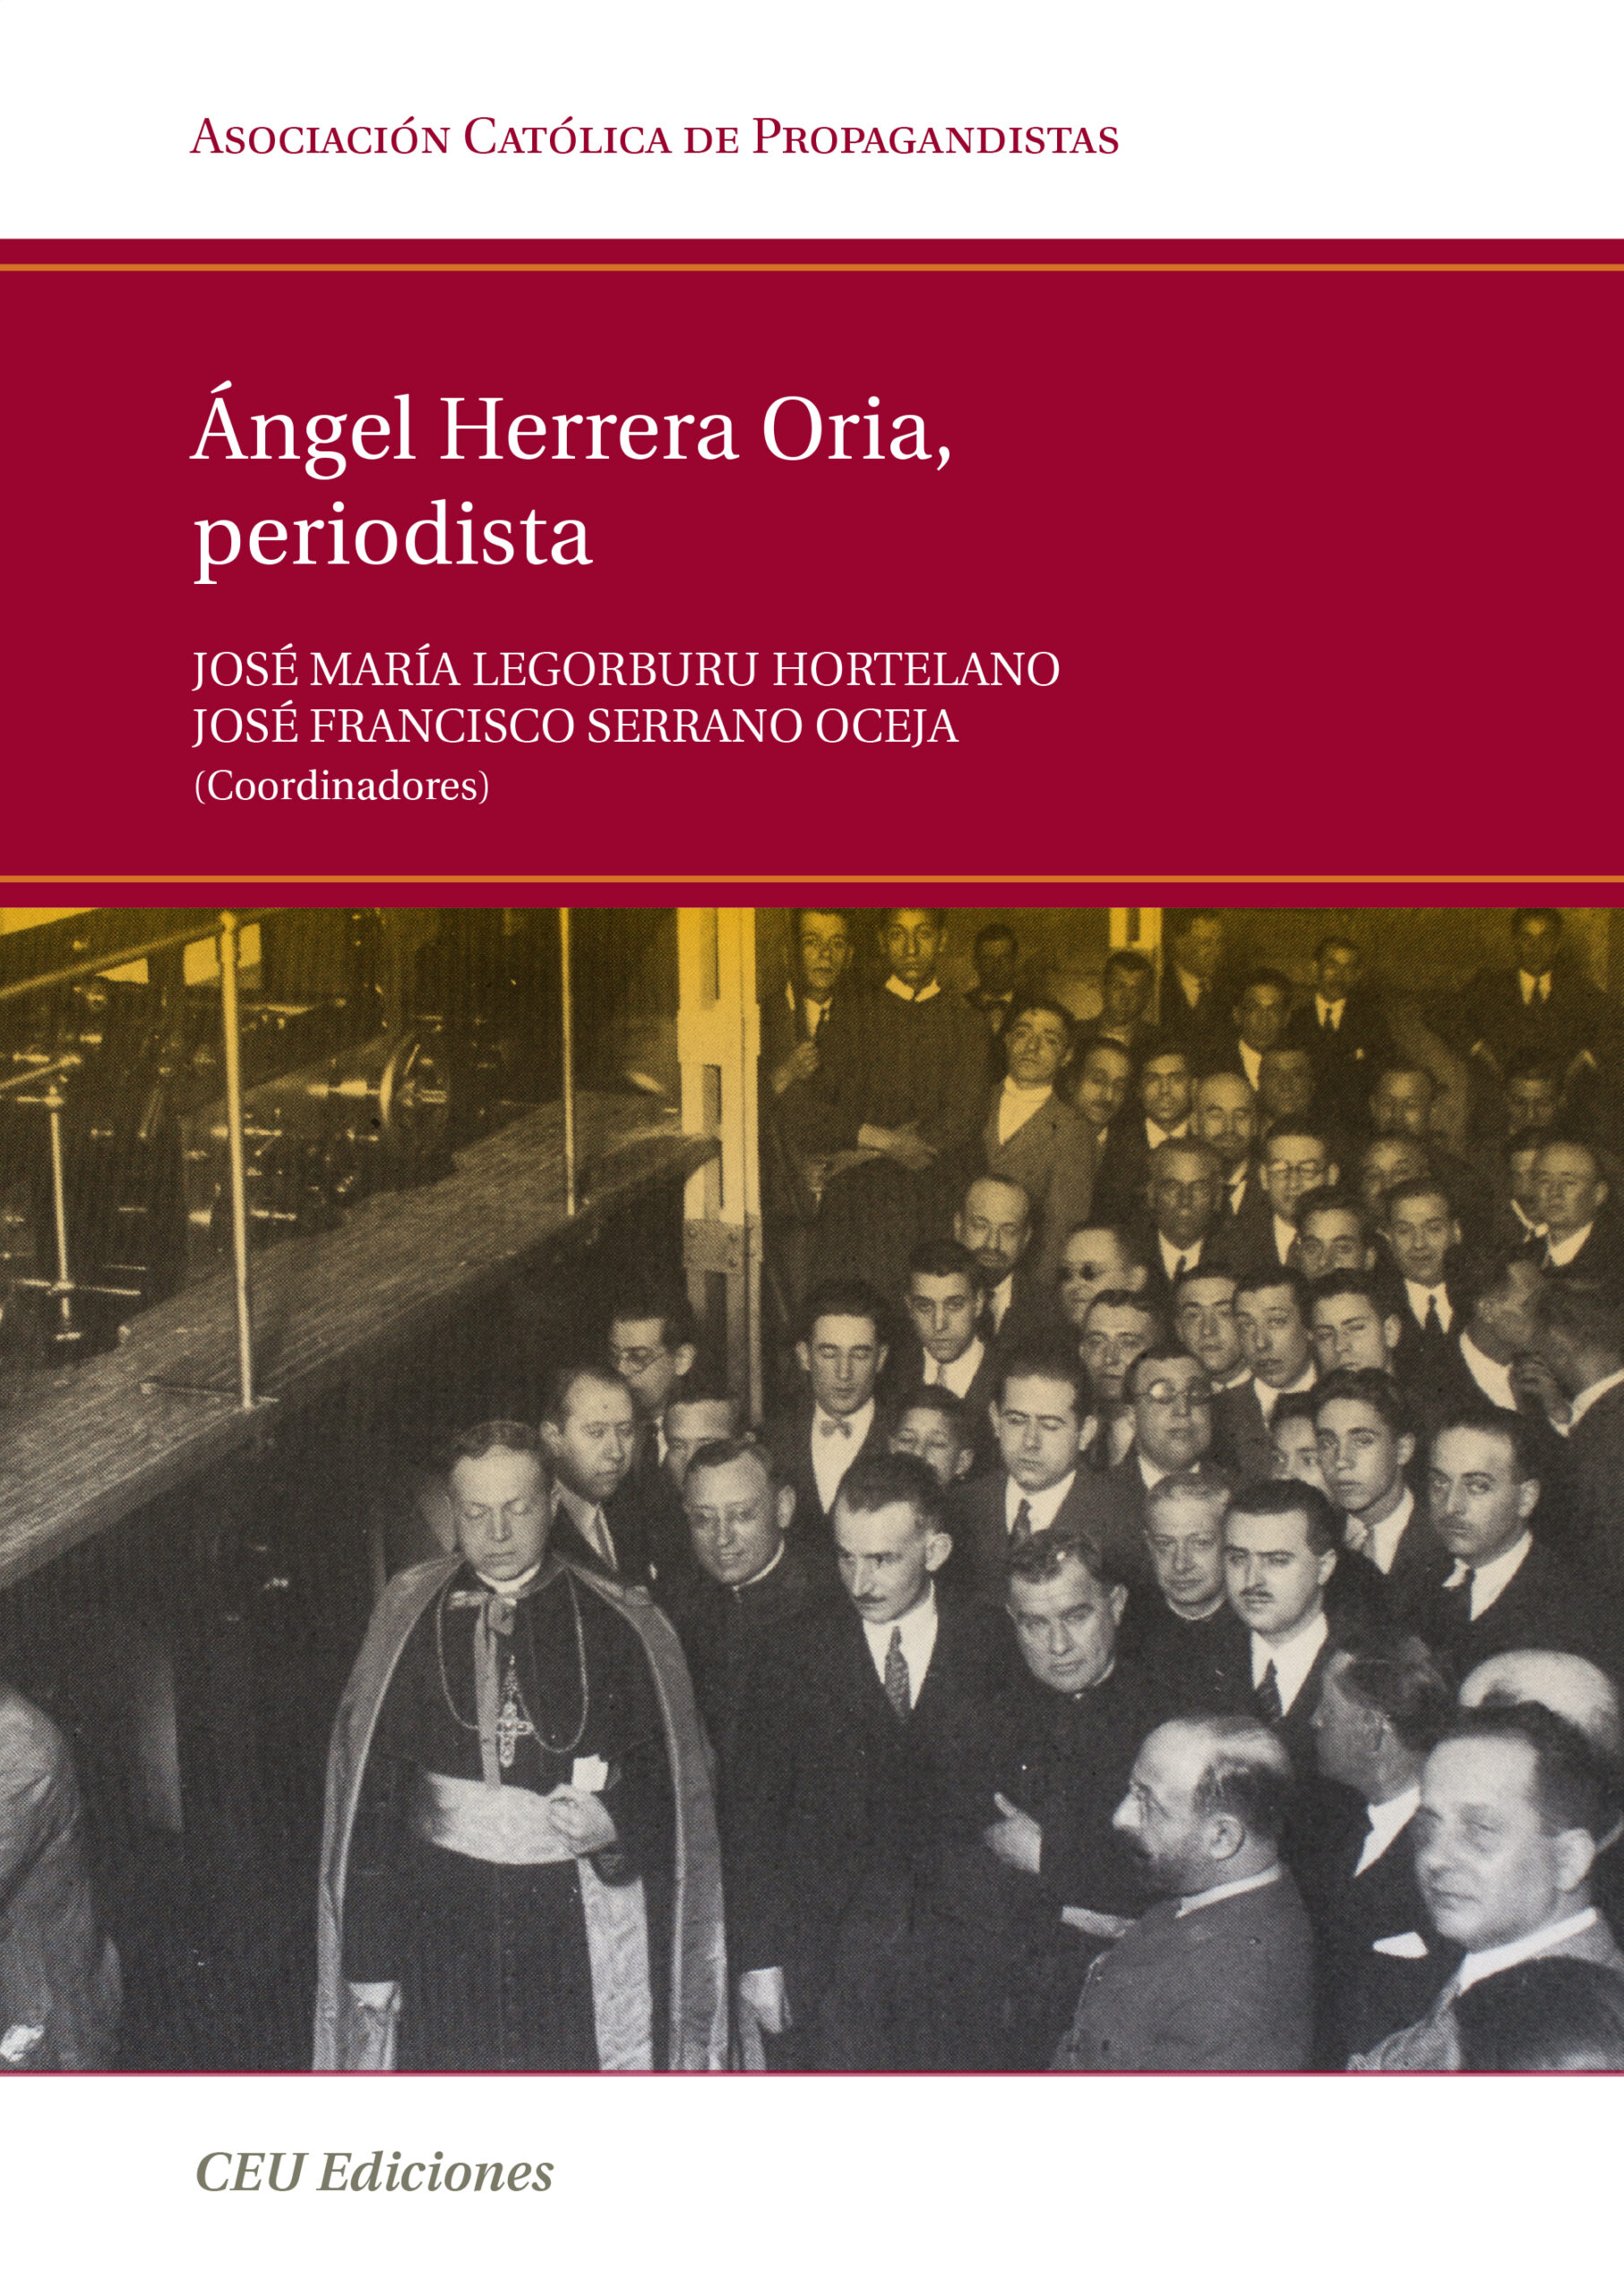 Imagen de portada del libro Ángel Herrera Oria, periodista